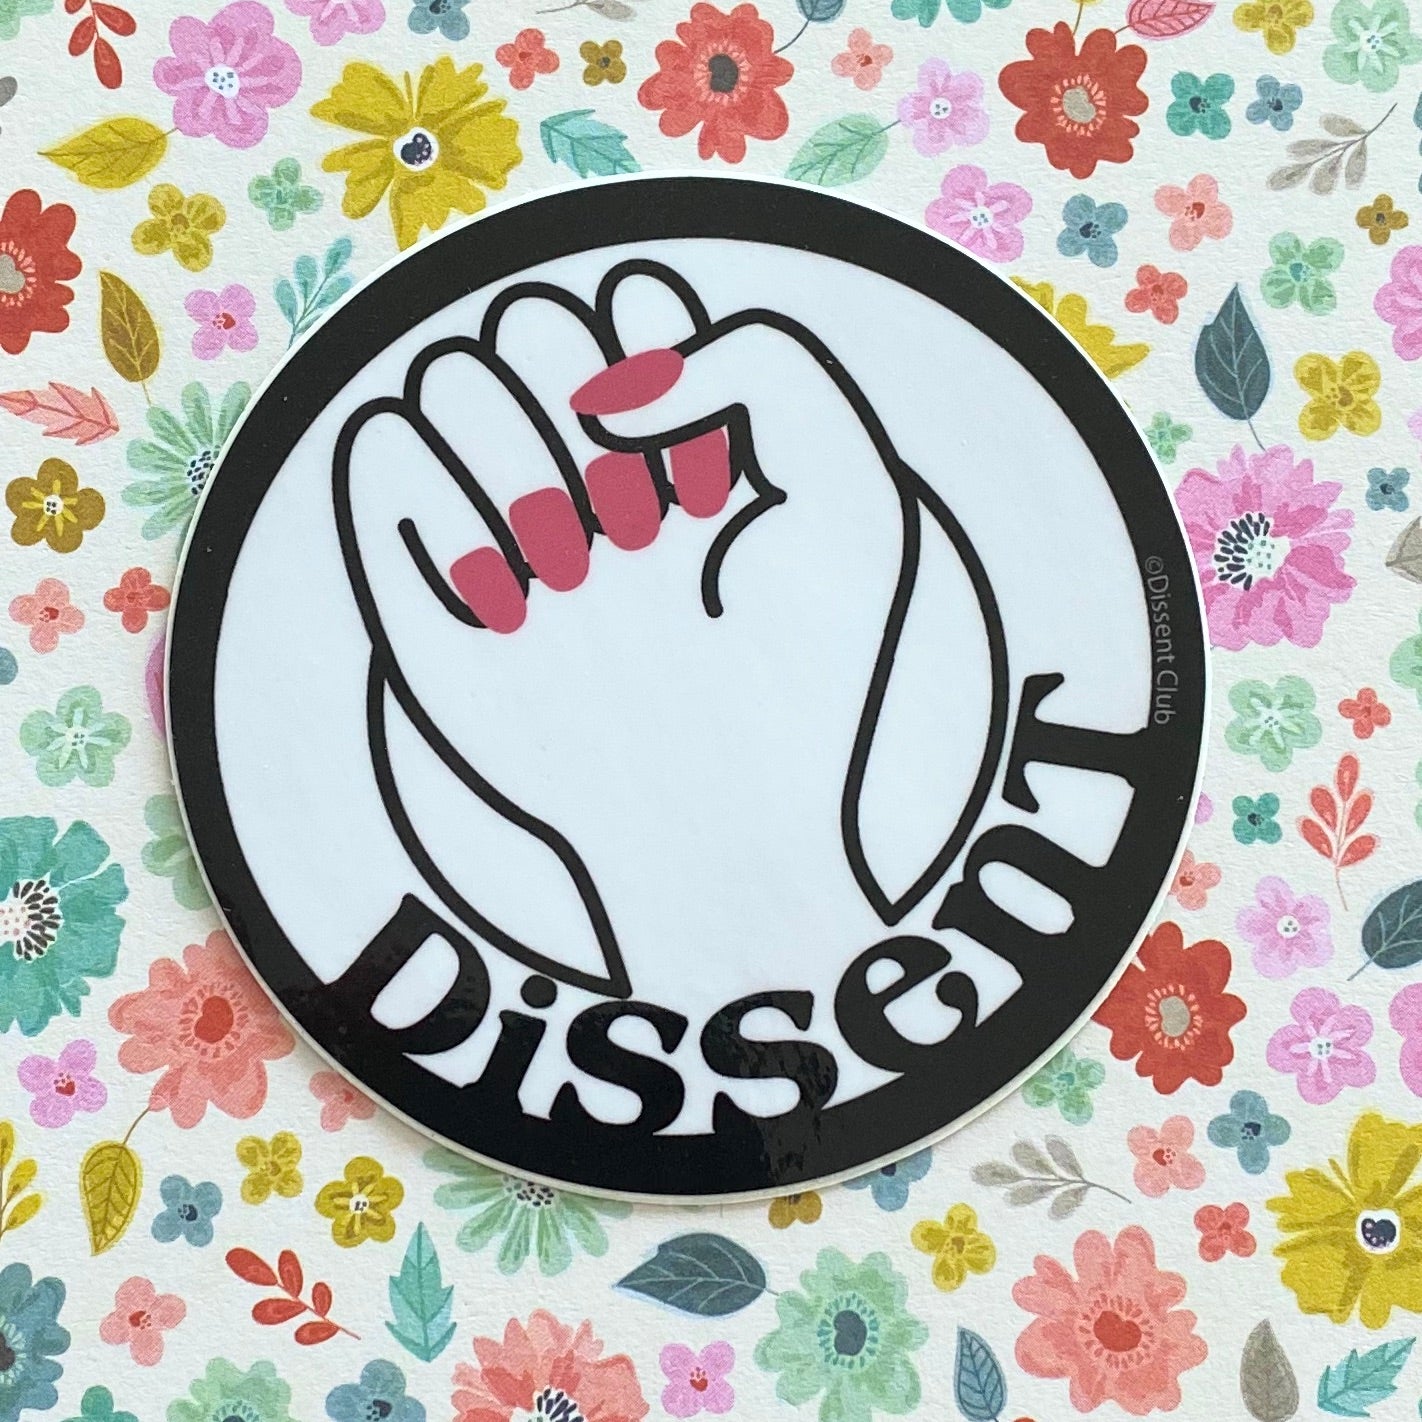 "Dissent" Fist Sticker